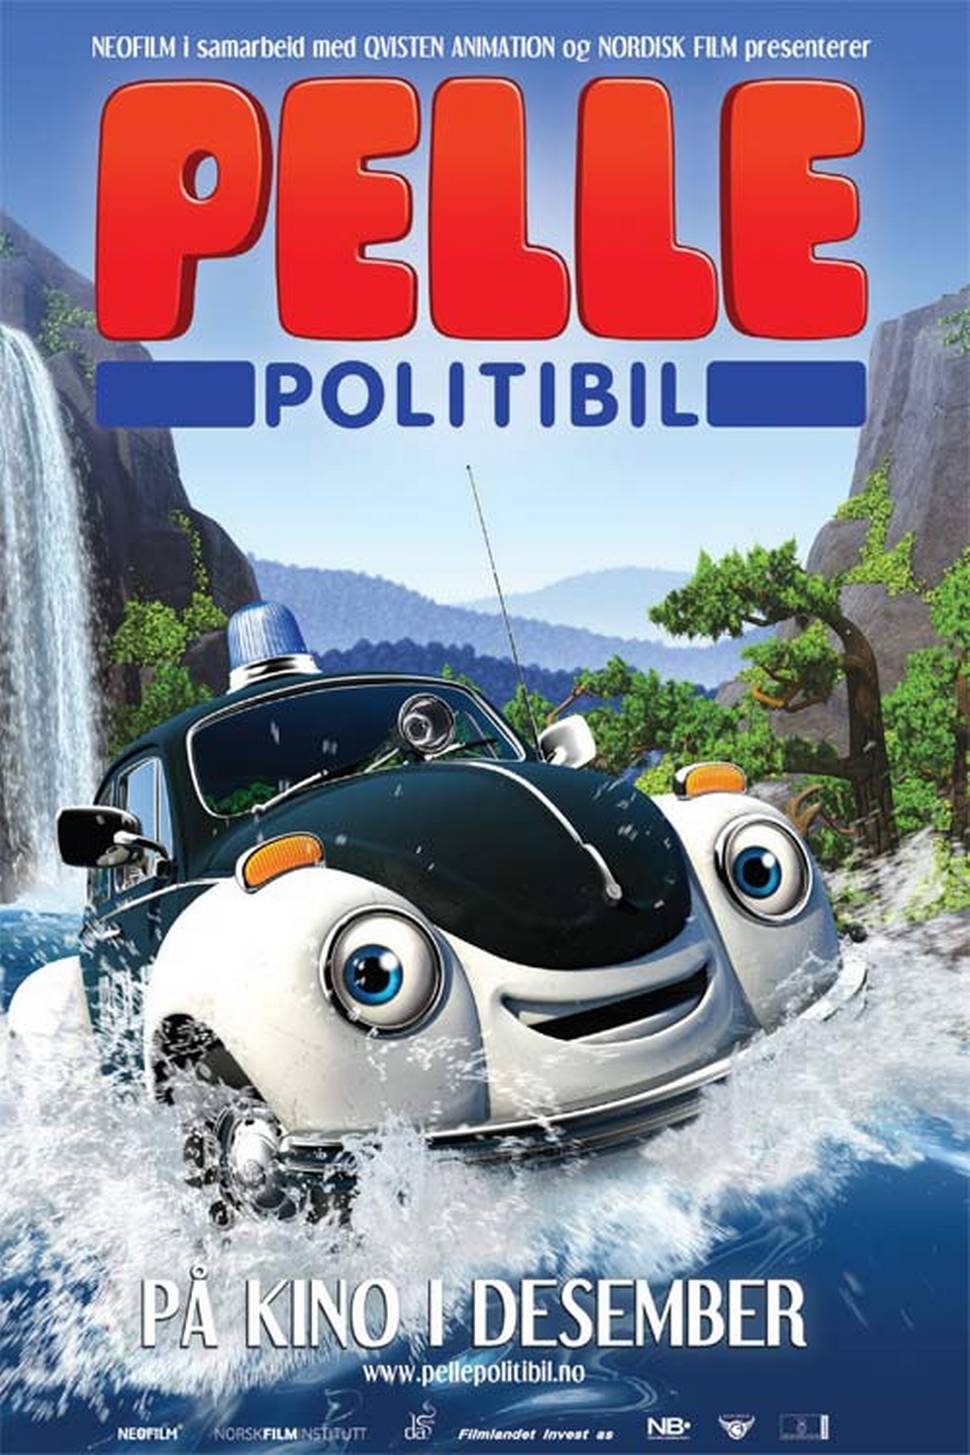 Pelle Politibil går i vannet